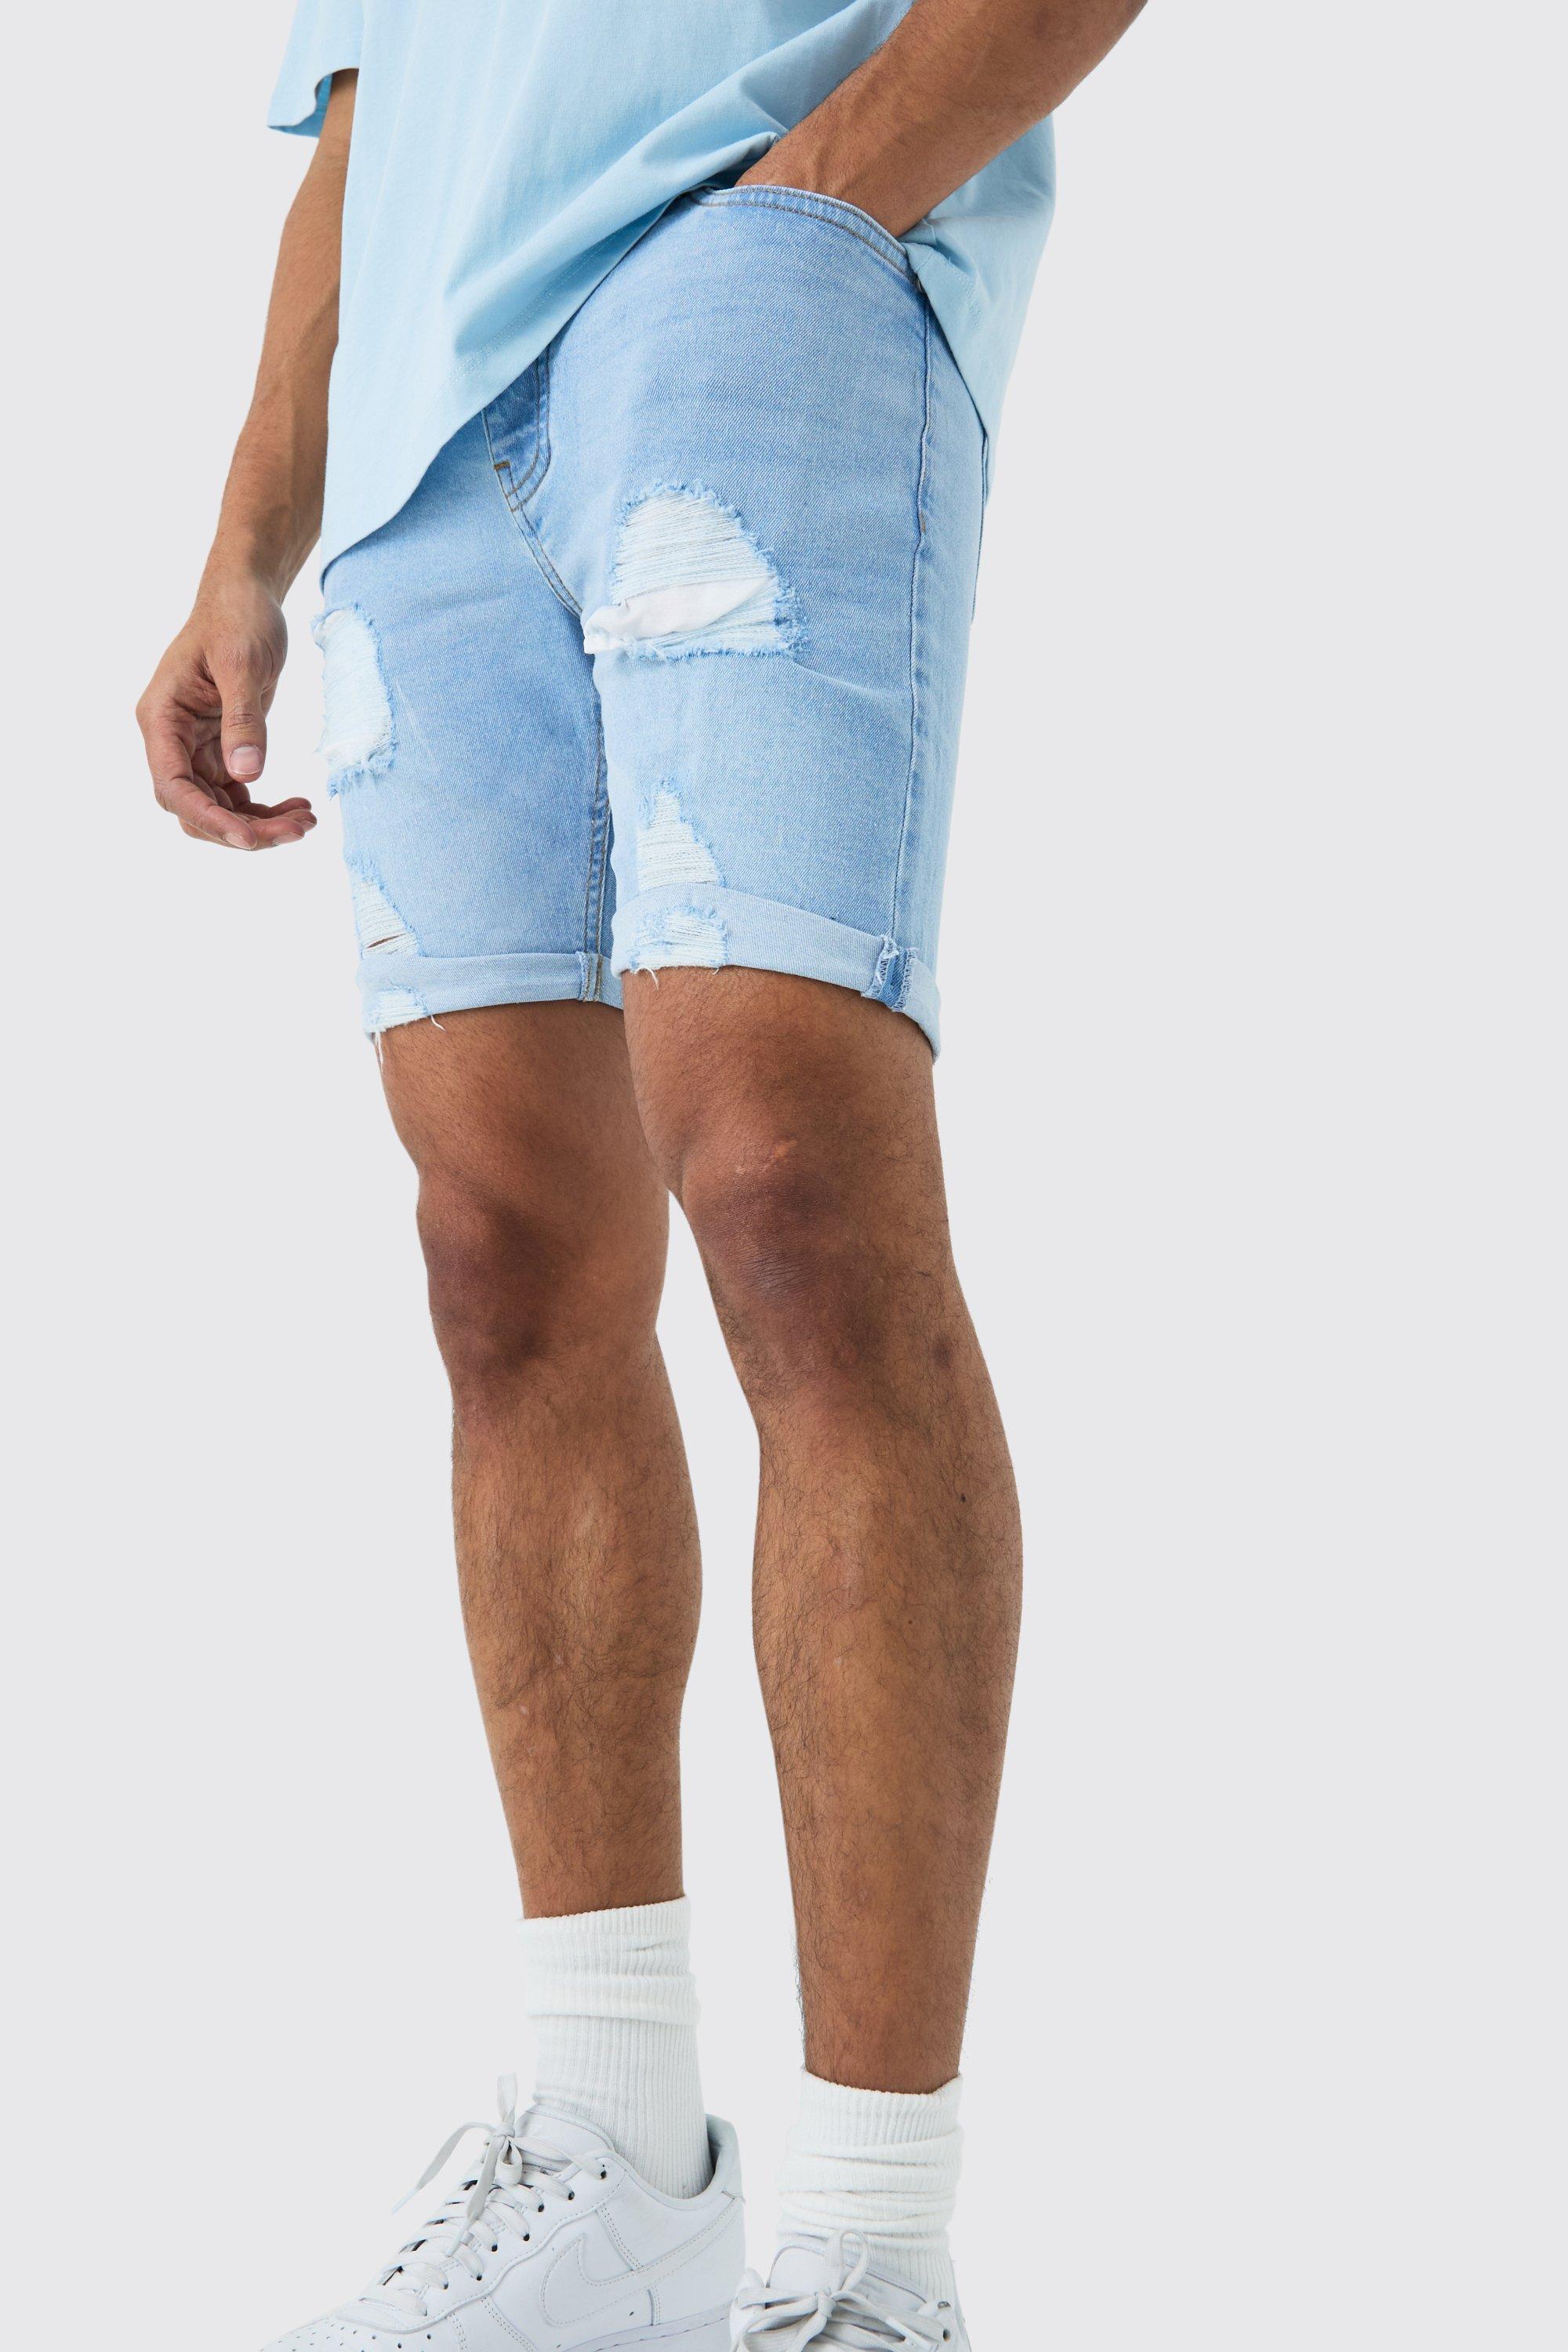 Image of Pantaloncini in denim Stretch Skinny Fit effetto smagliato in azzurro, Azzurro